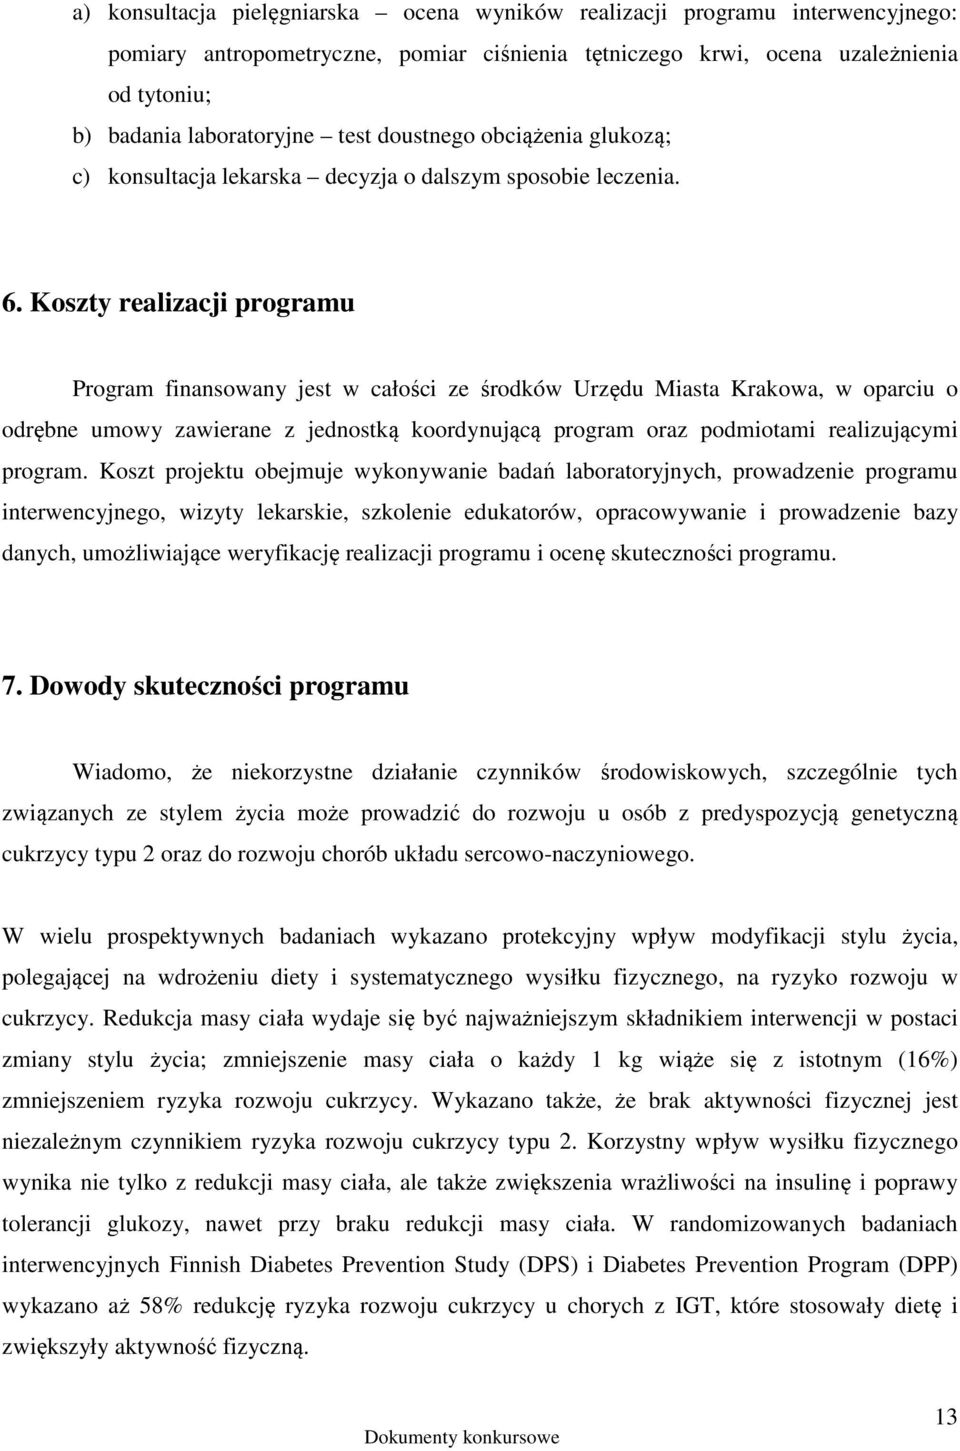 Koszty realizacji programu Program finansowany jest w całości ze środków Urzędu Miasta Krakowa, w oparciu o odrębne umowy zawierane z jednostką koordynującą program oraz podmiotami realizującymi